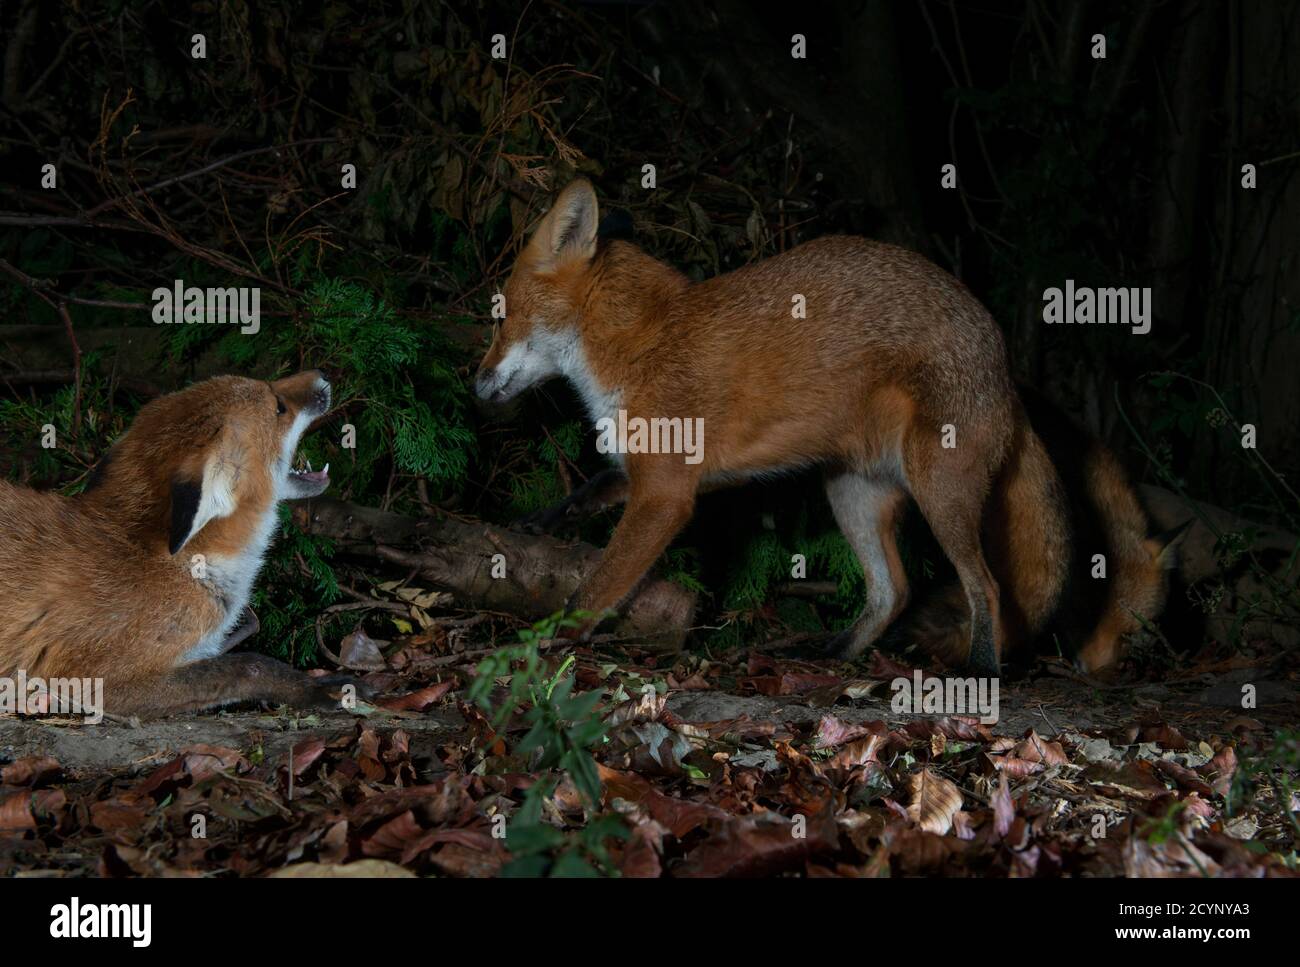 Deux renards avec l'un d'eux avertissant l'autre, l'un montrant l'agression et l'autre soumis Banque D'Images